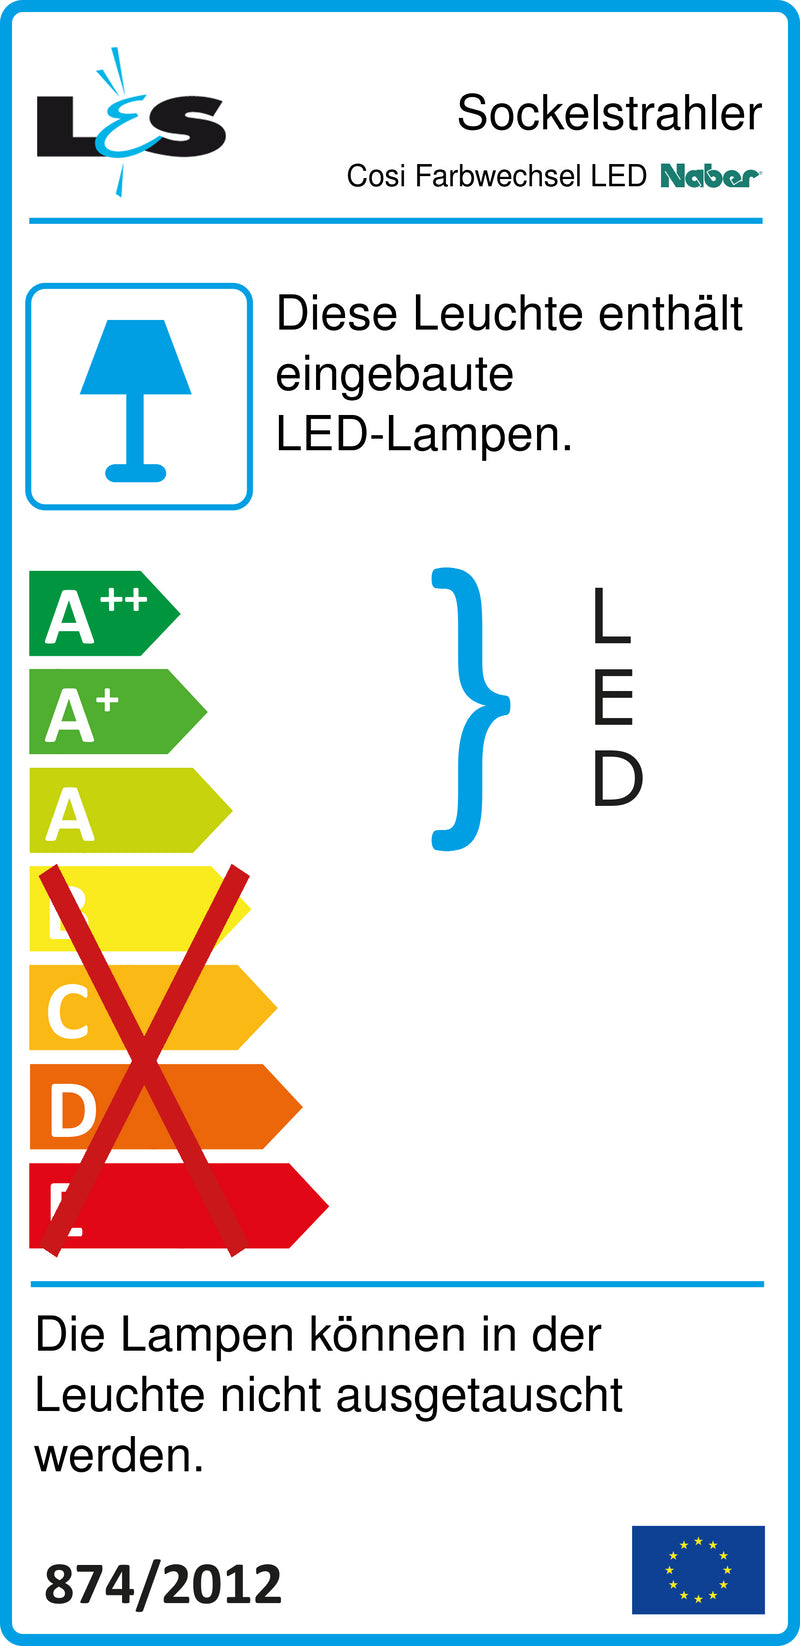 E-Label zu Zeichnung zu Cosi Farbwechsel LED als Variante Set-6 von Naber GmbH in der Kategorie Lichttechnik in Österreich auf conceptshop.at